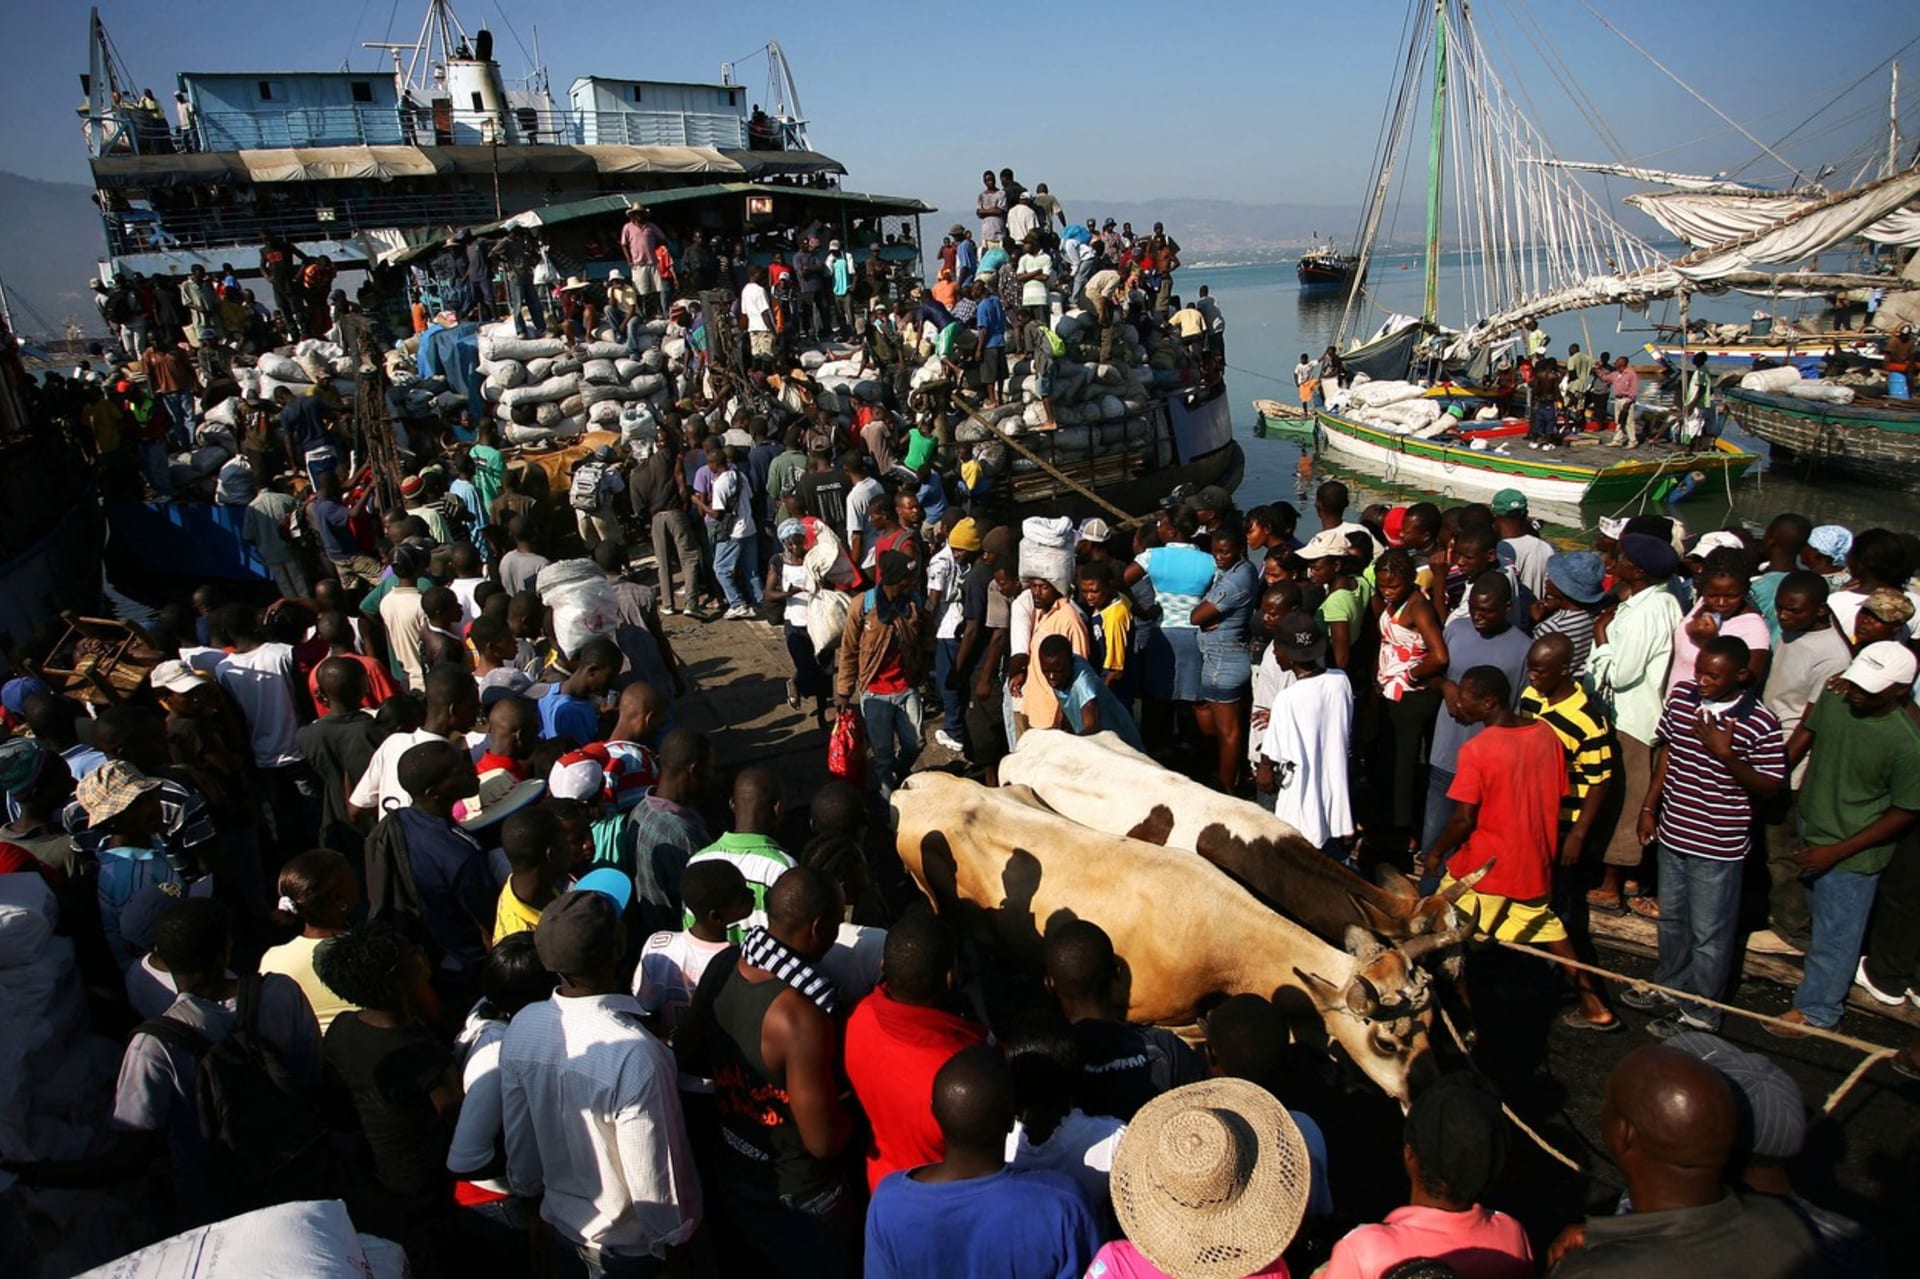 Lodní doprava je na Haiti velmi důležitá a vytížená